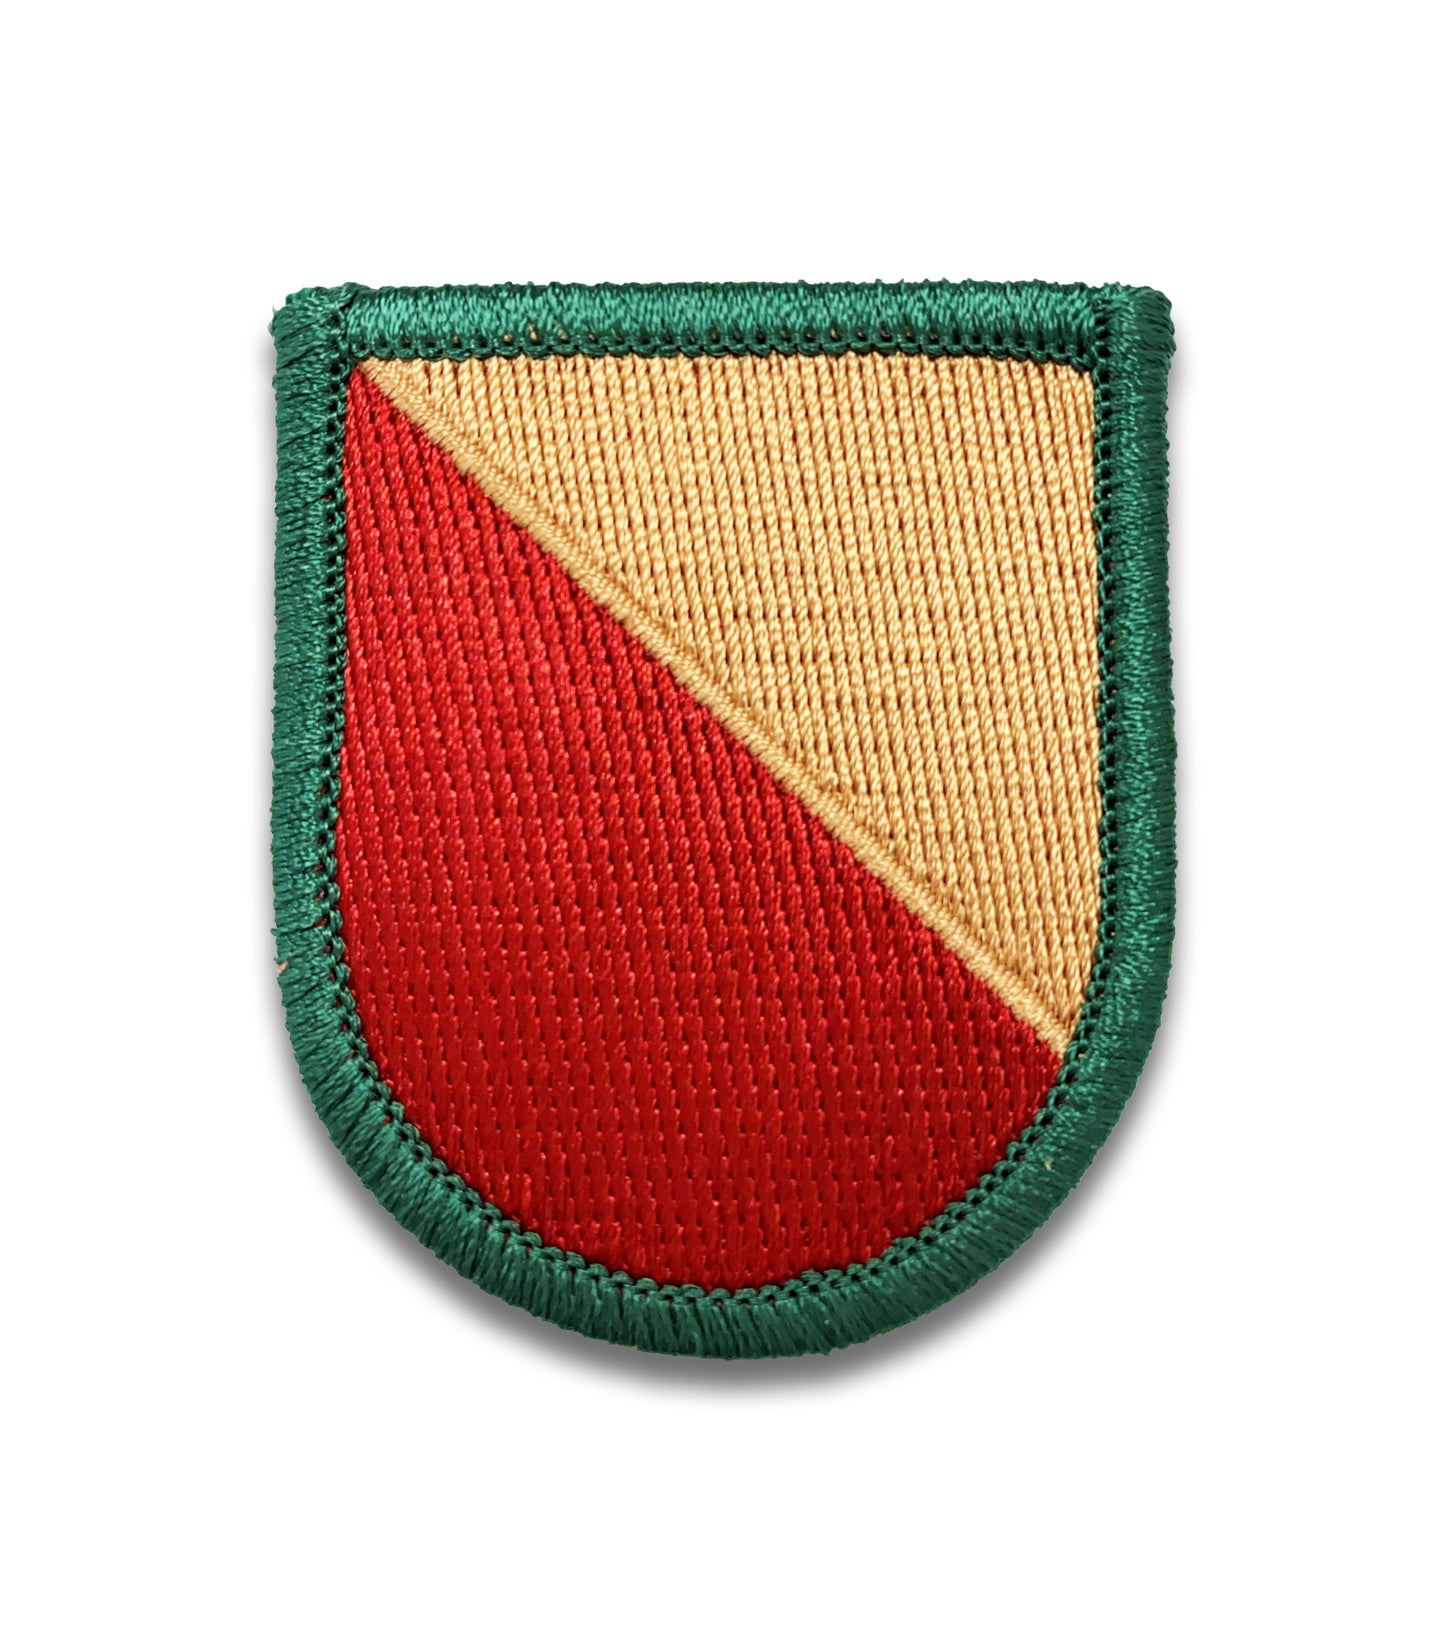 U.S. Army 528th Support Battalion Flash (each)